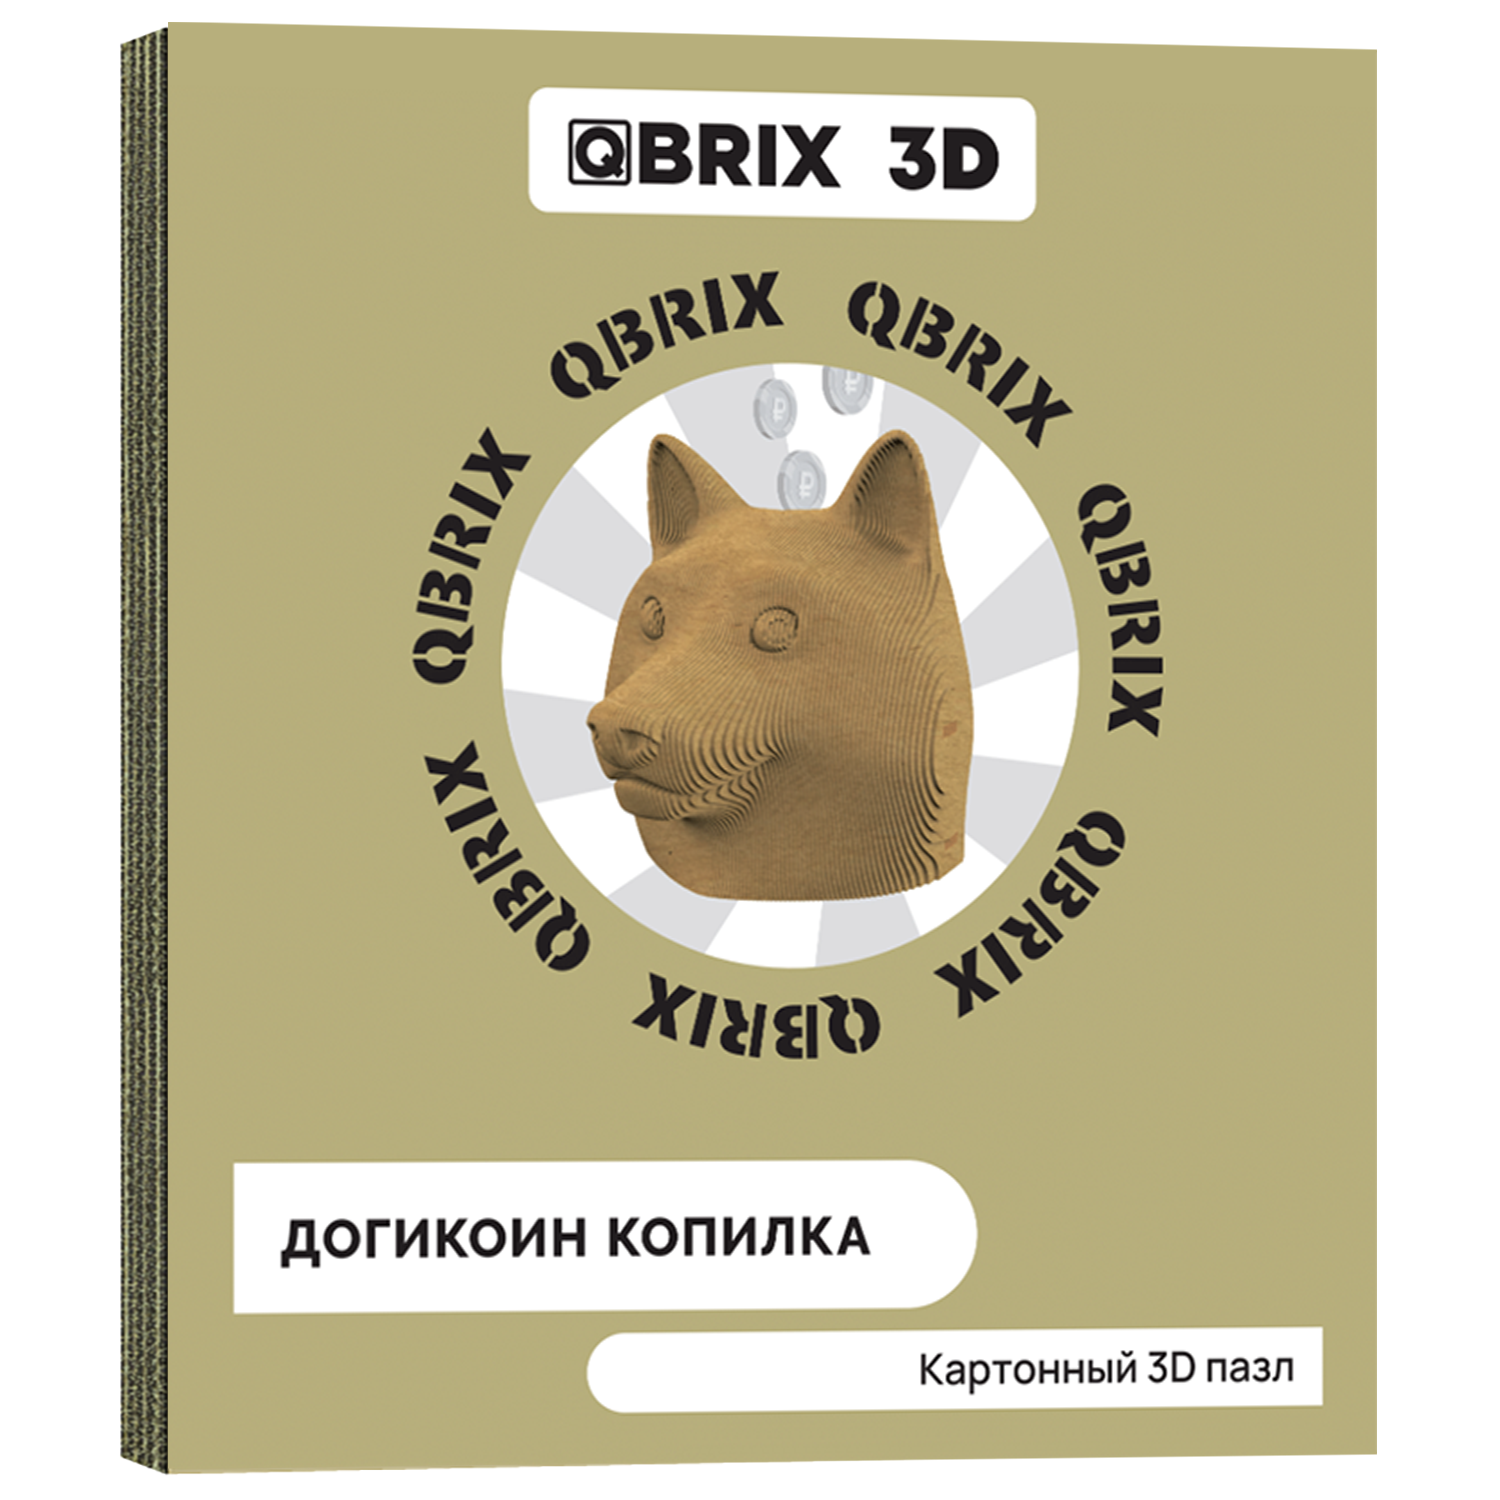 Конструктор QBRIX 3D картонный Догикоин копилка 20011 20011 - фото 1